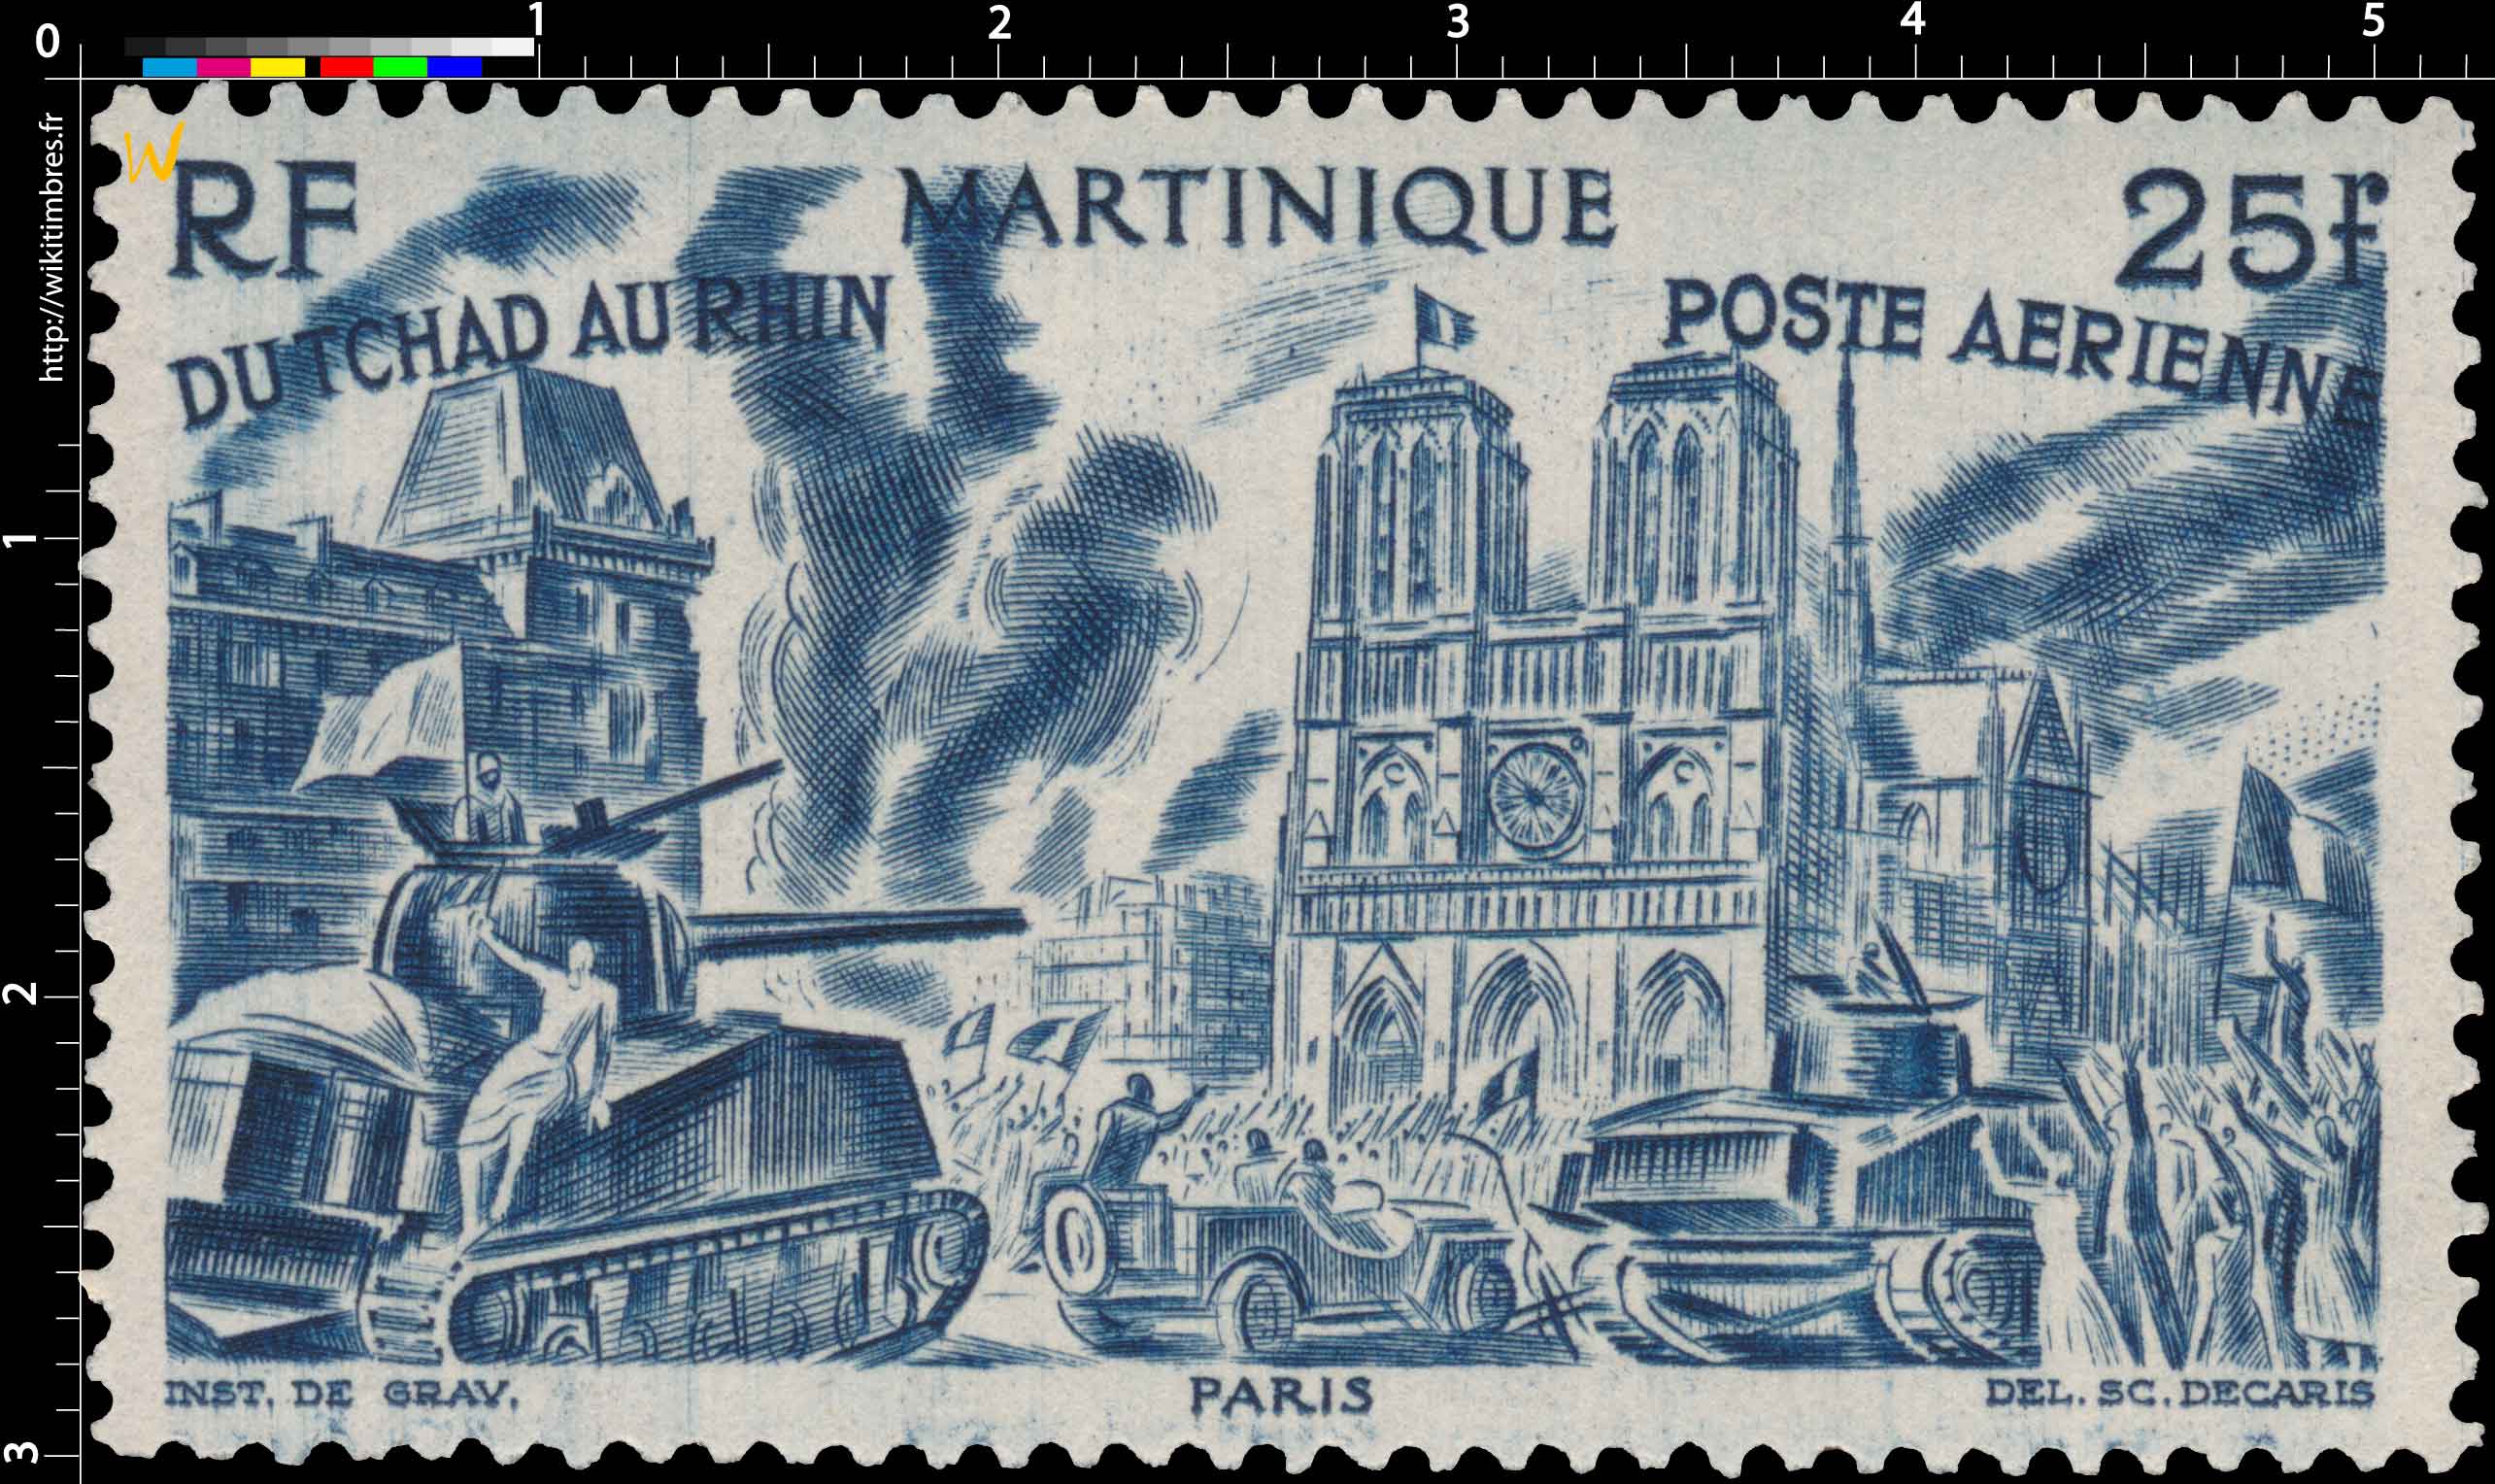 Martinique - Du Tchad au Rhin